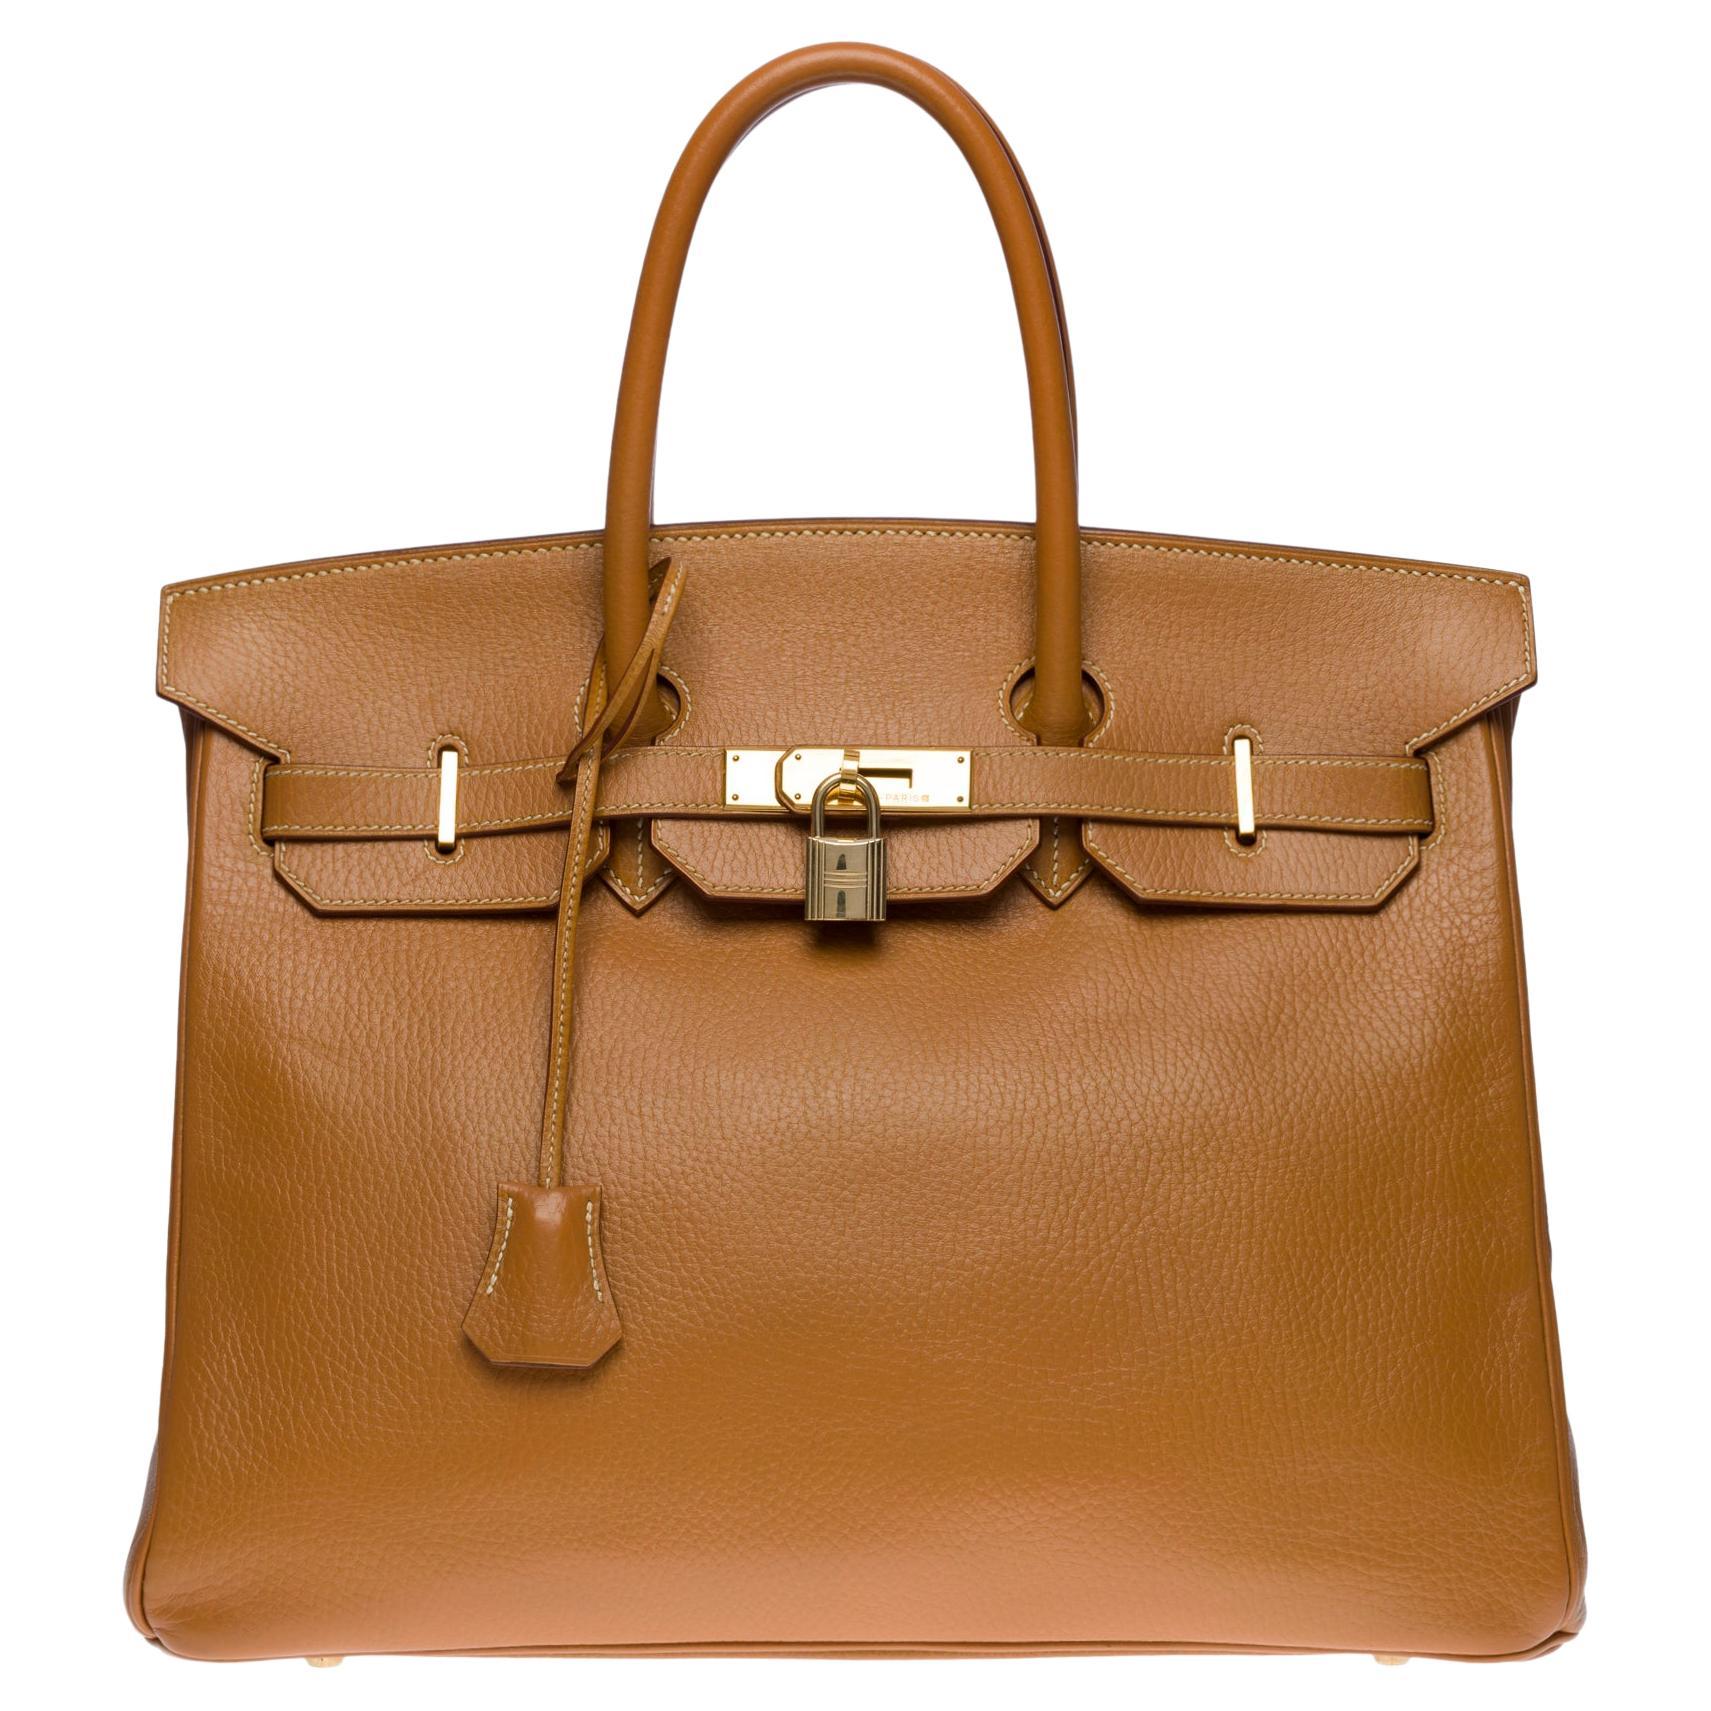 Amazing Hermès Birkin 35 handbag in Gold Vache Ardennes leather, GHW